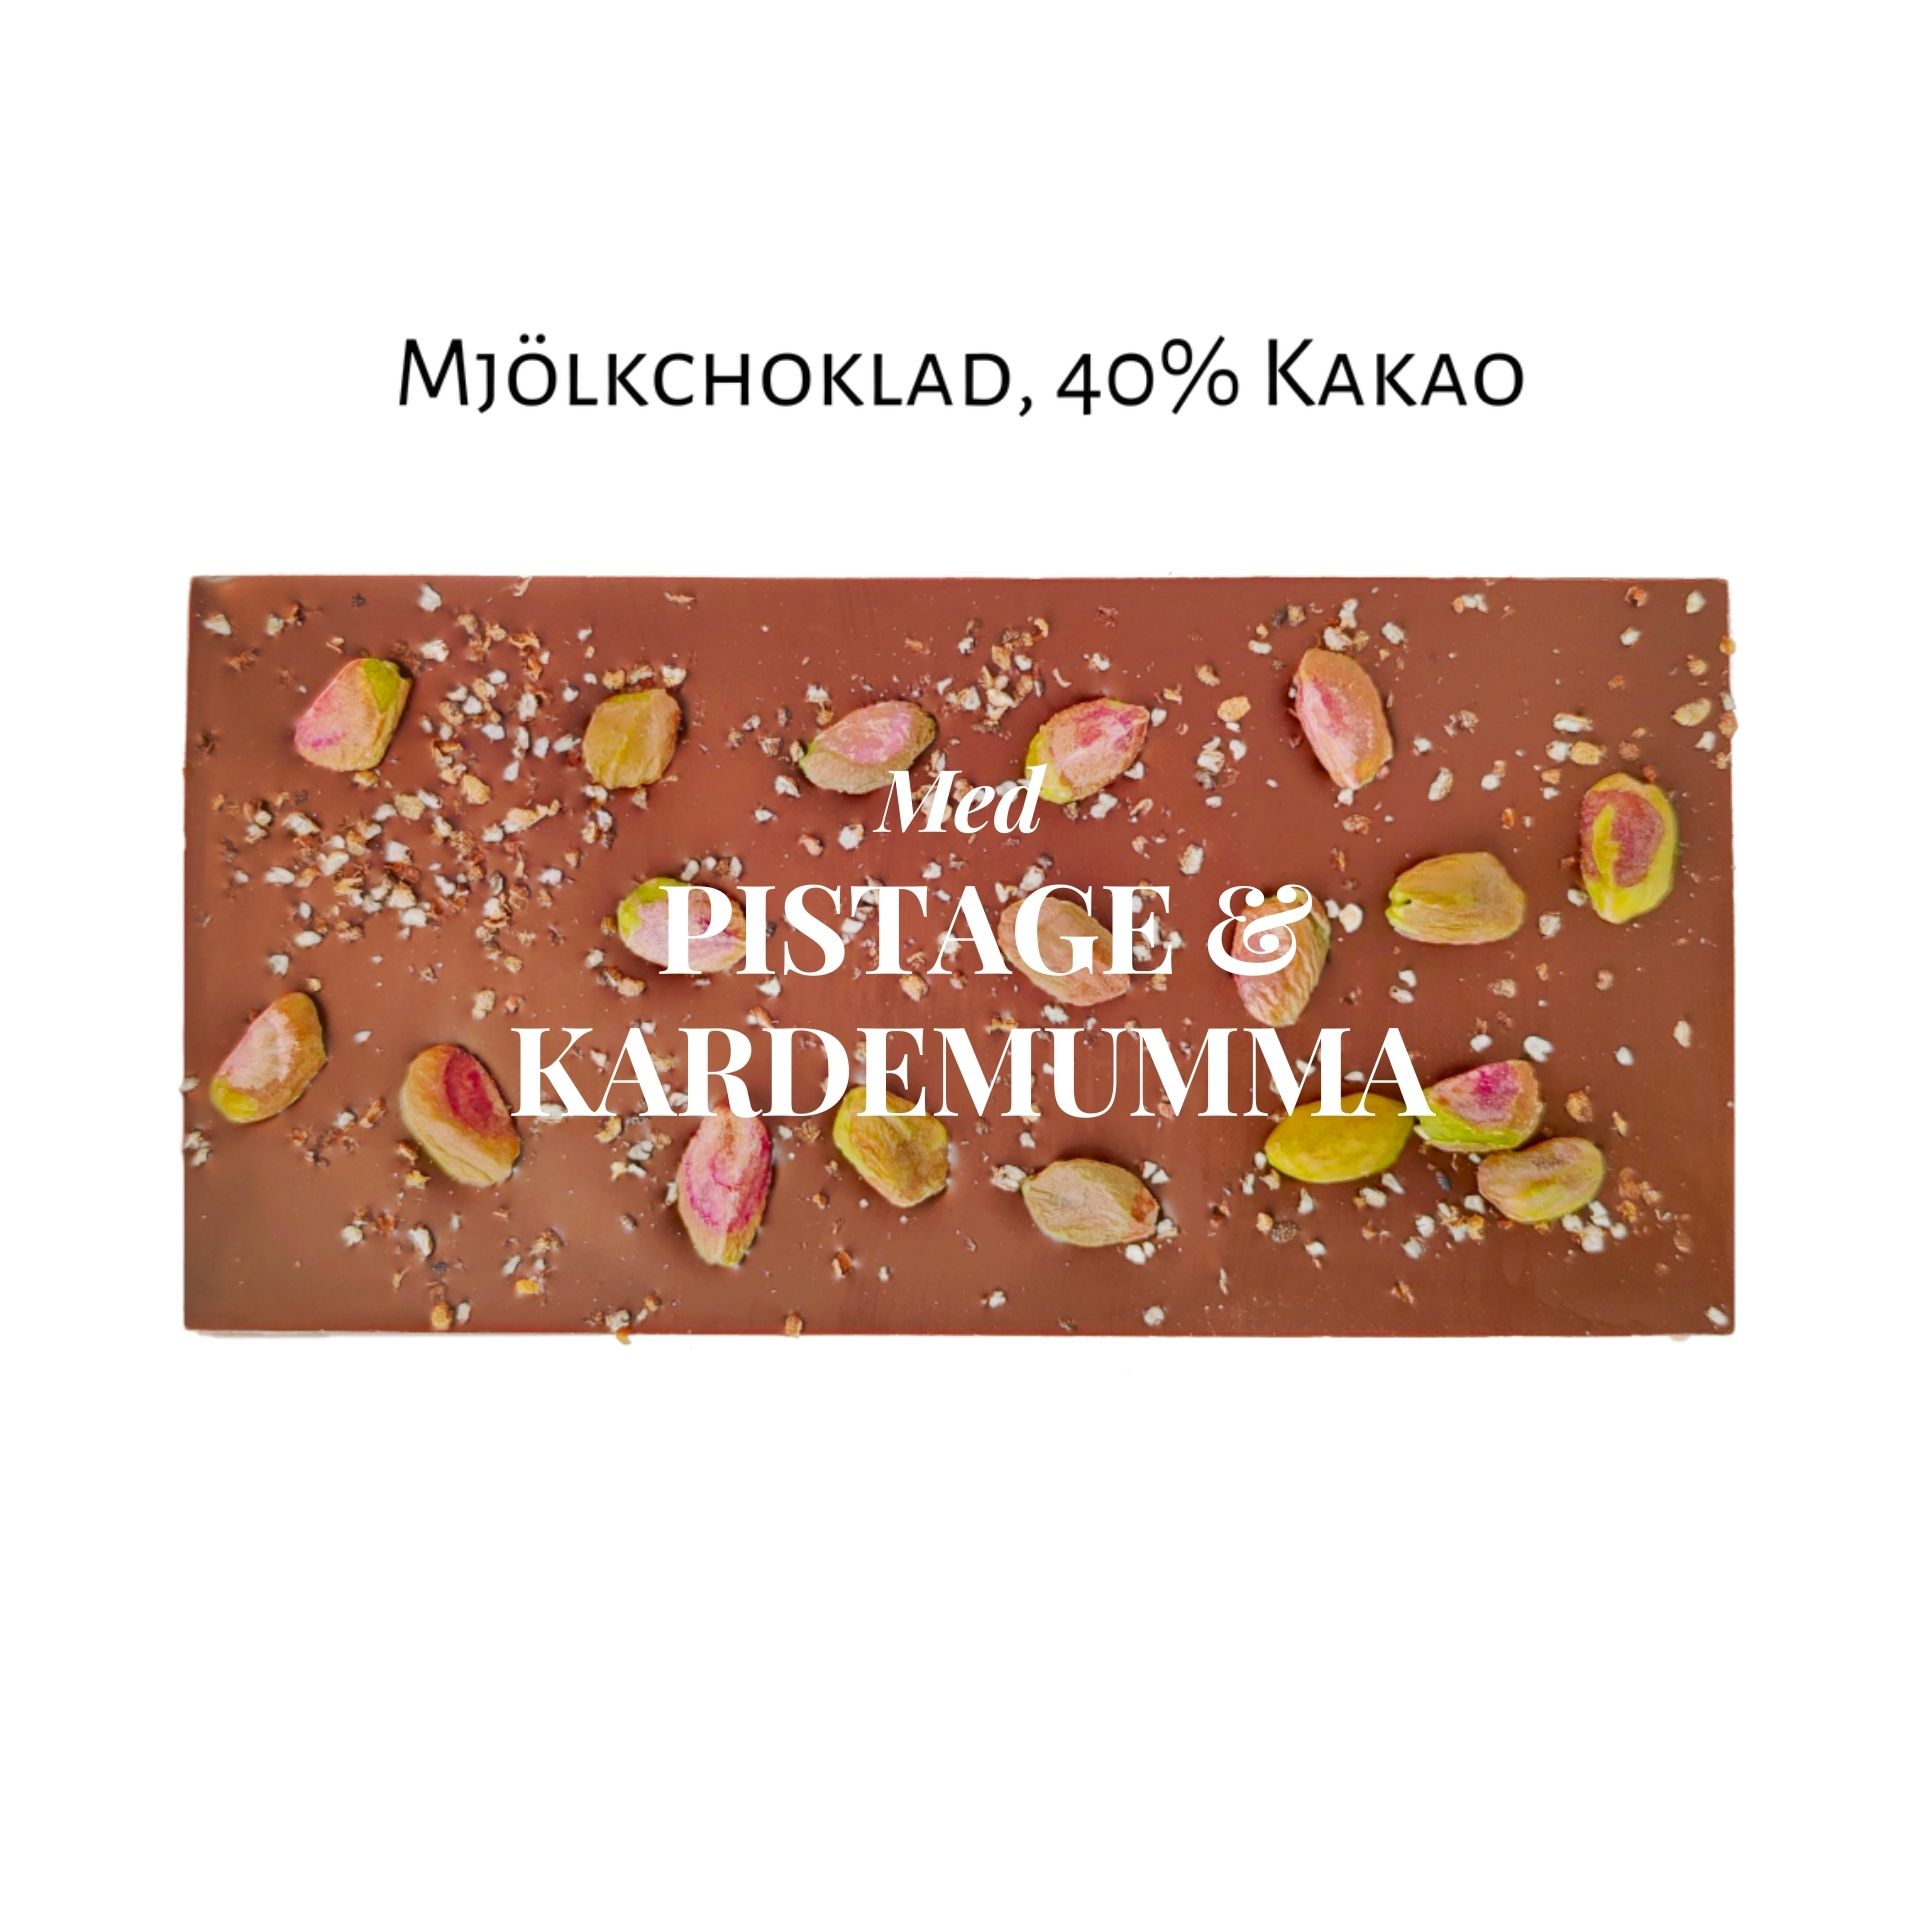 Pralinhuset - 40% Kakao - Pistage & Kardemumma